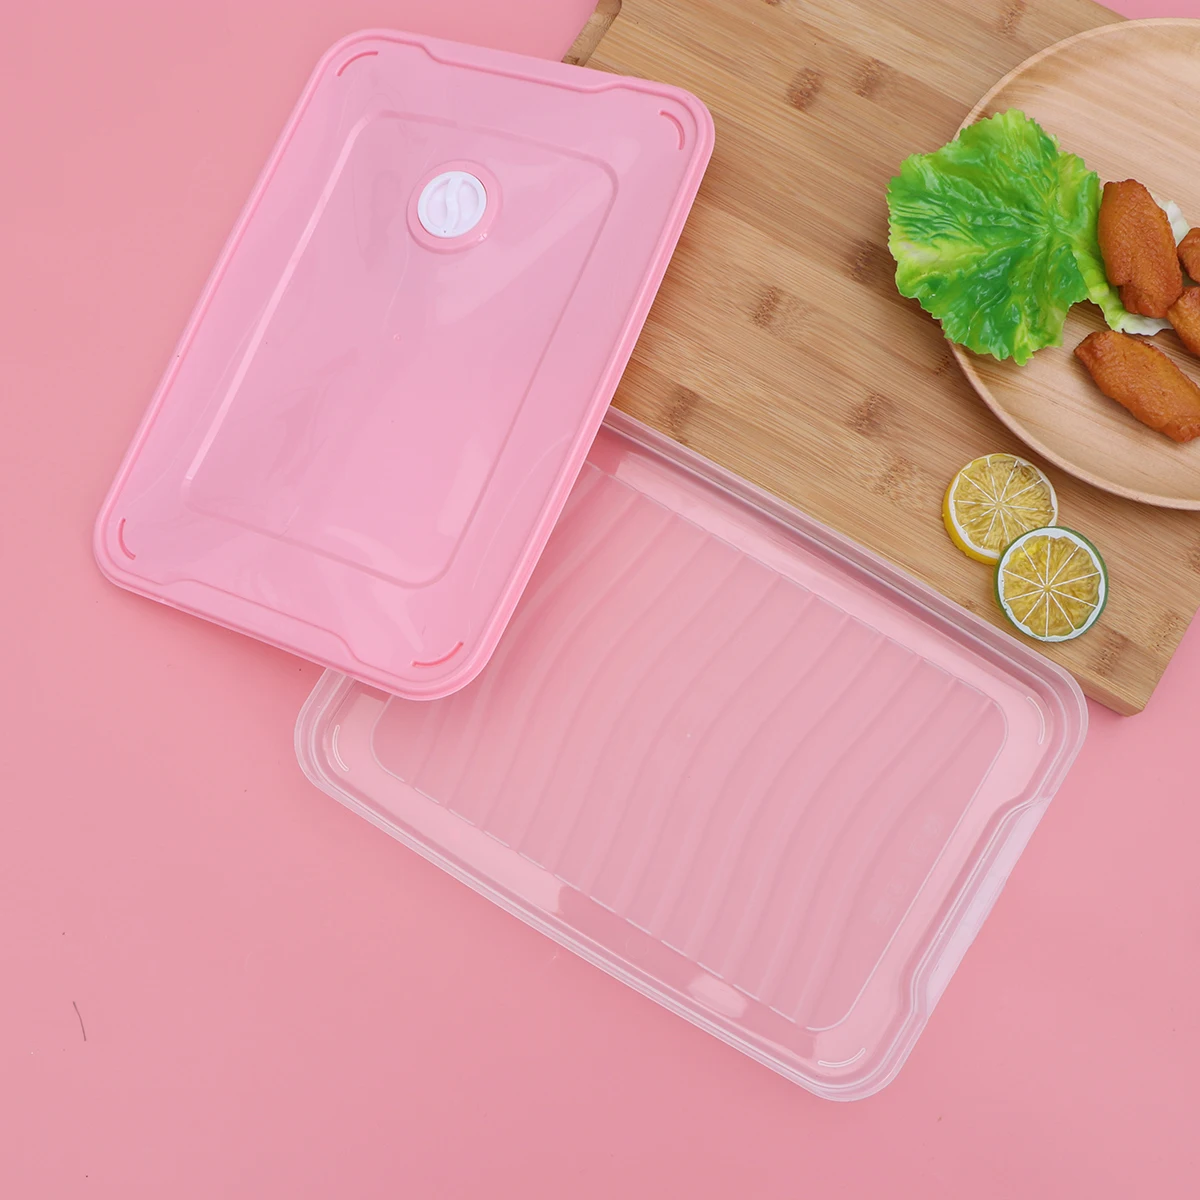 1 шт. прозрачный холодильник Пельменный ящик герметичный контейнер для еды прочный пластиковый контейнер для холодильника кухня с морозильной камерой аксессуары